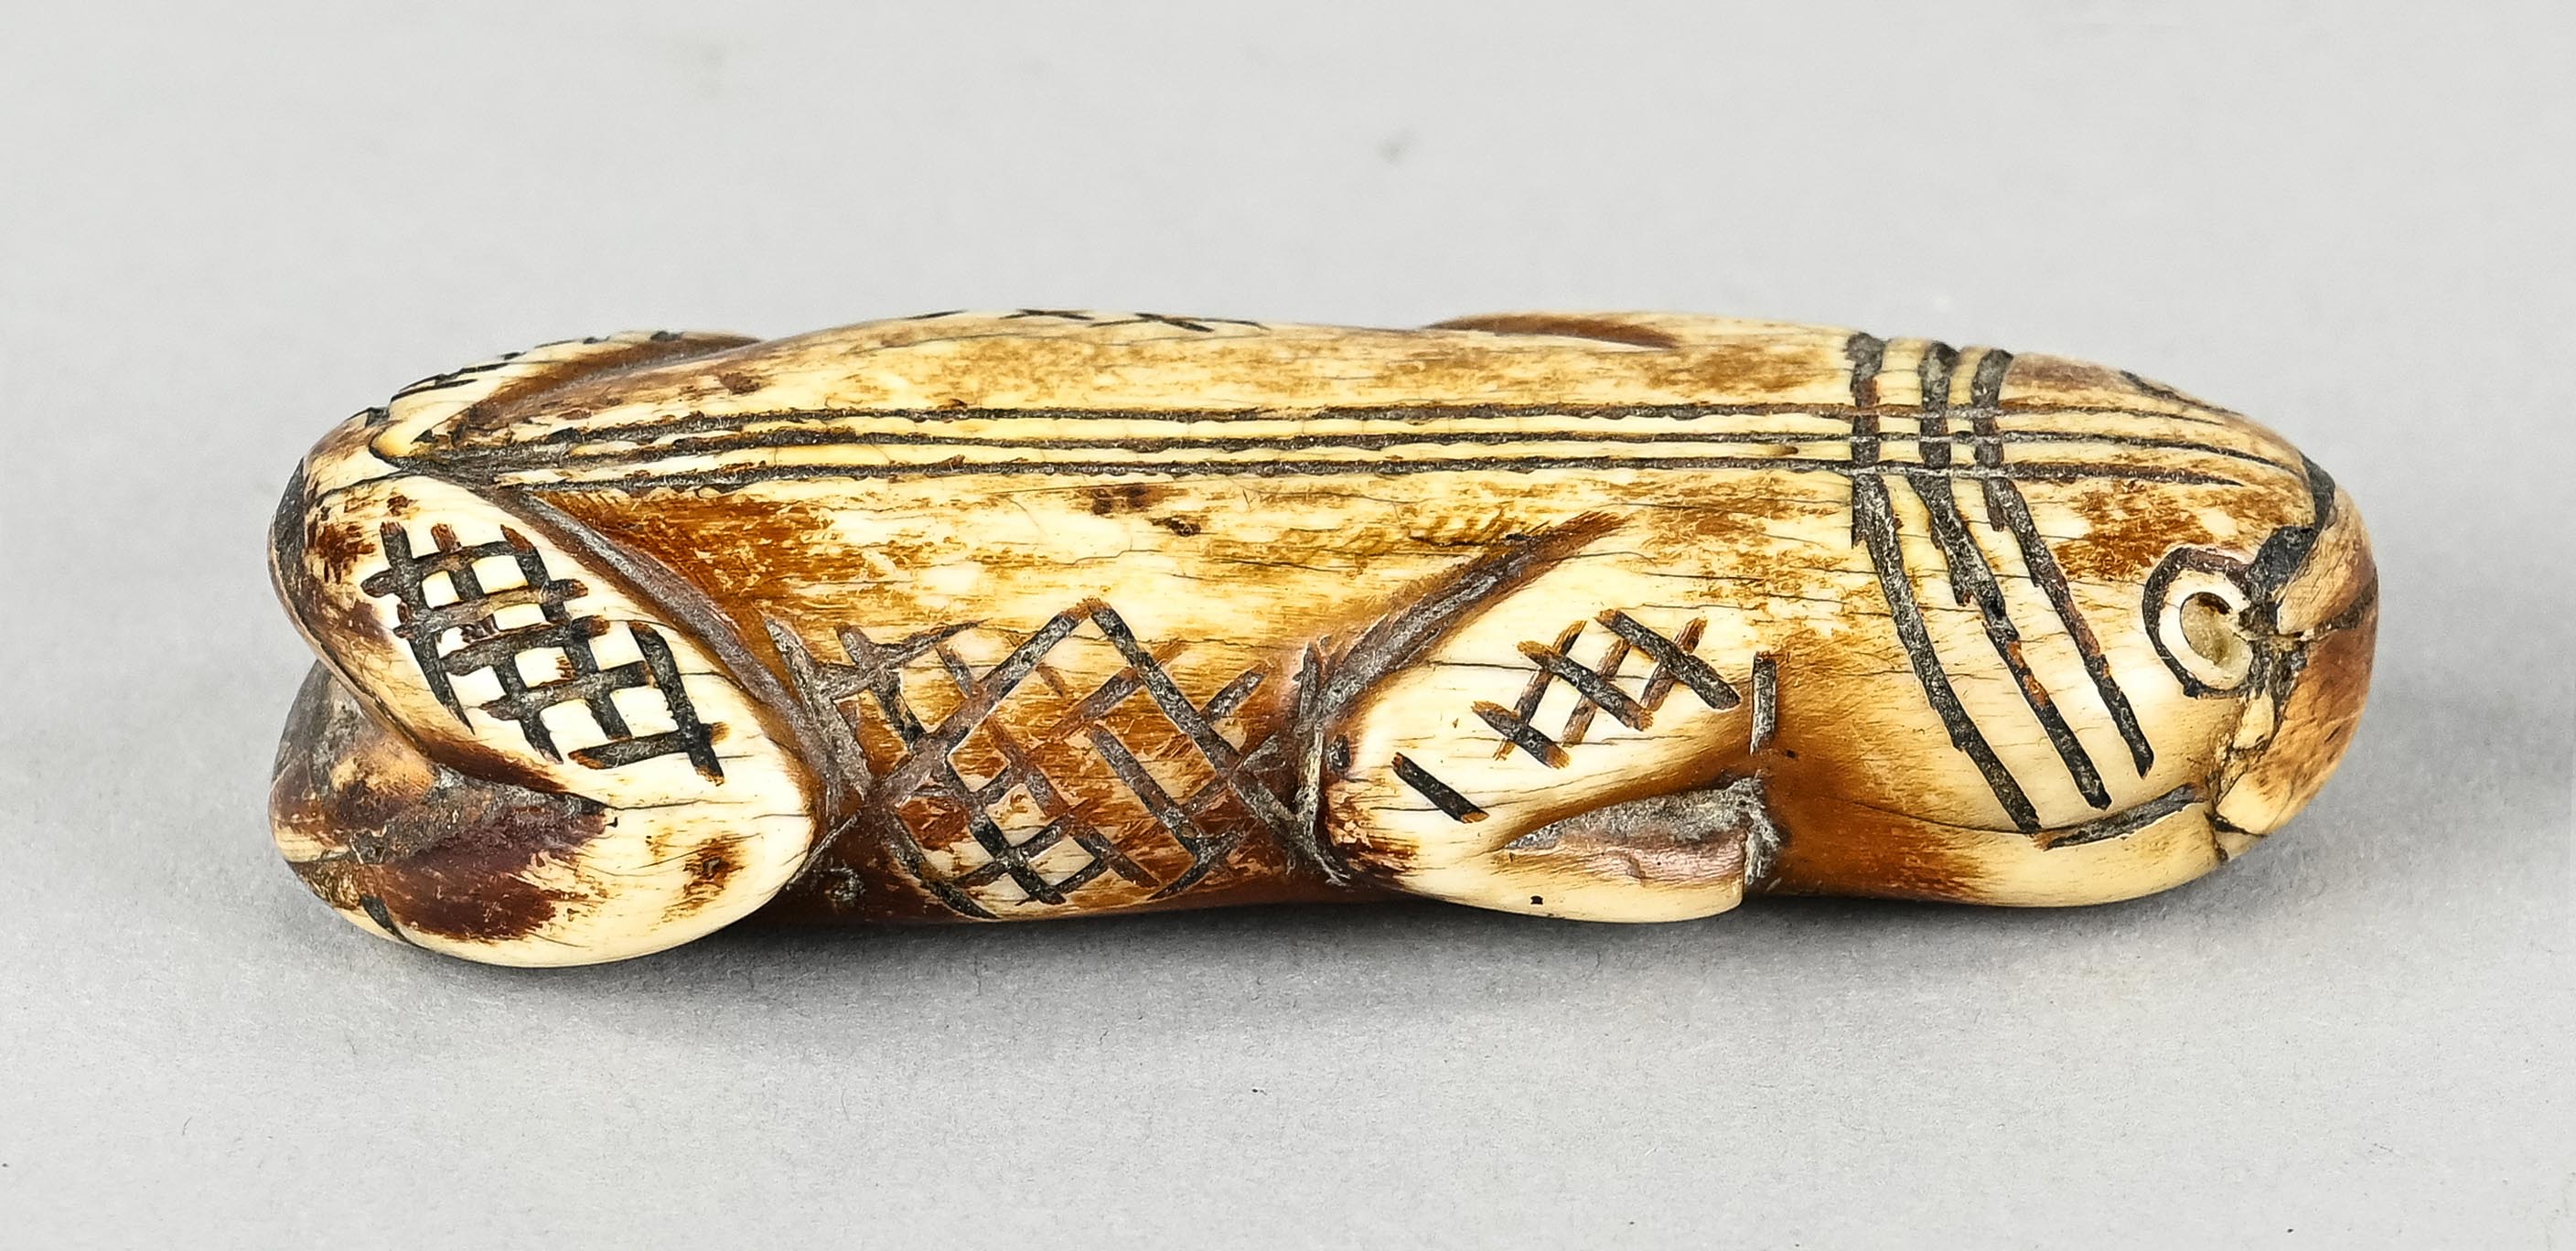 Inuit Schnitzerei, Tierfigur kauernd, mit rautenförmigen Verzierungen, aus Bein geschnitzte Figur,  - Bild 2 aus 6